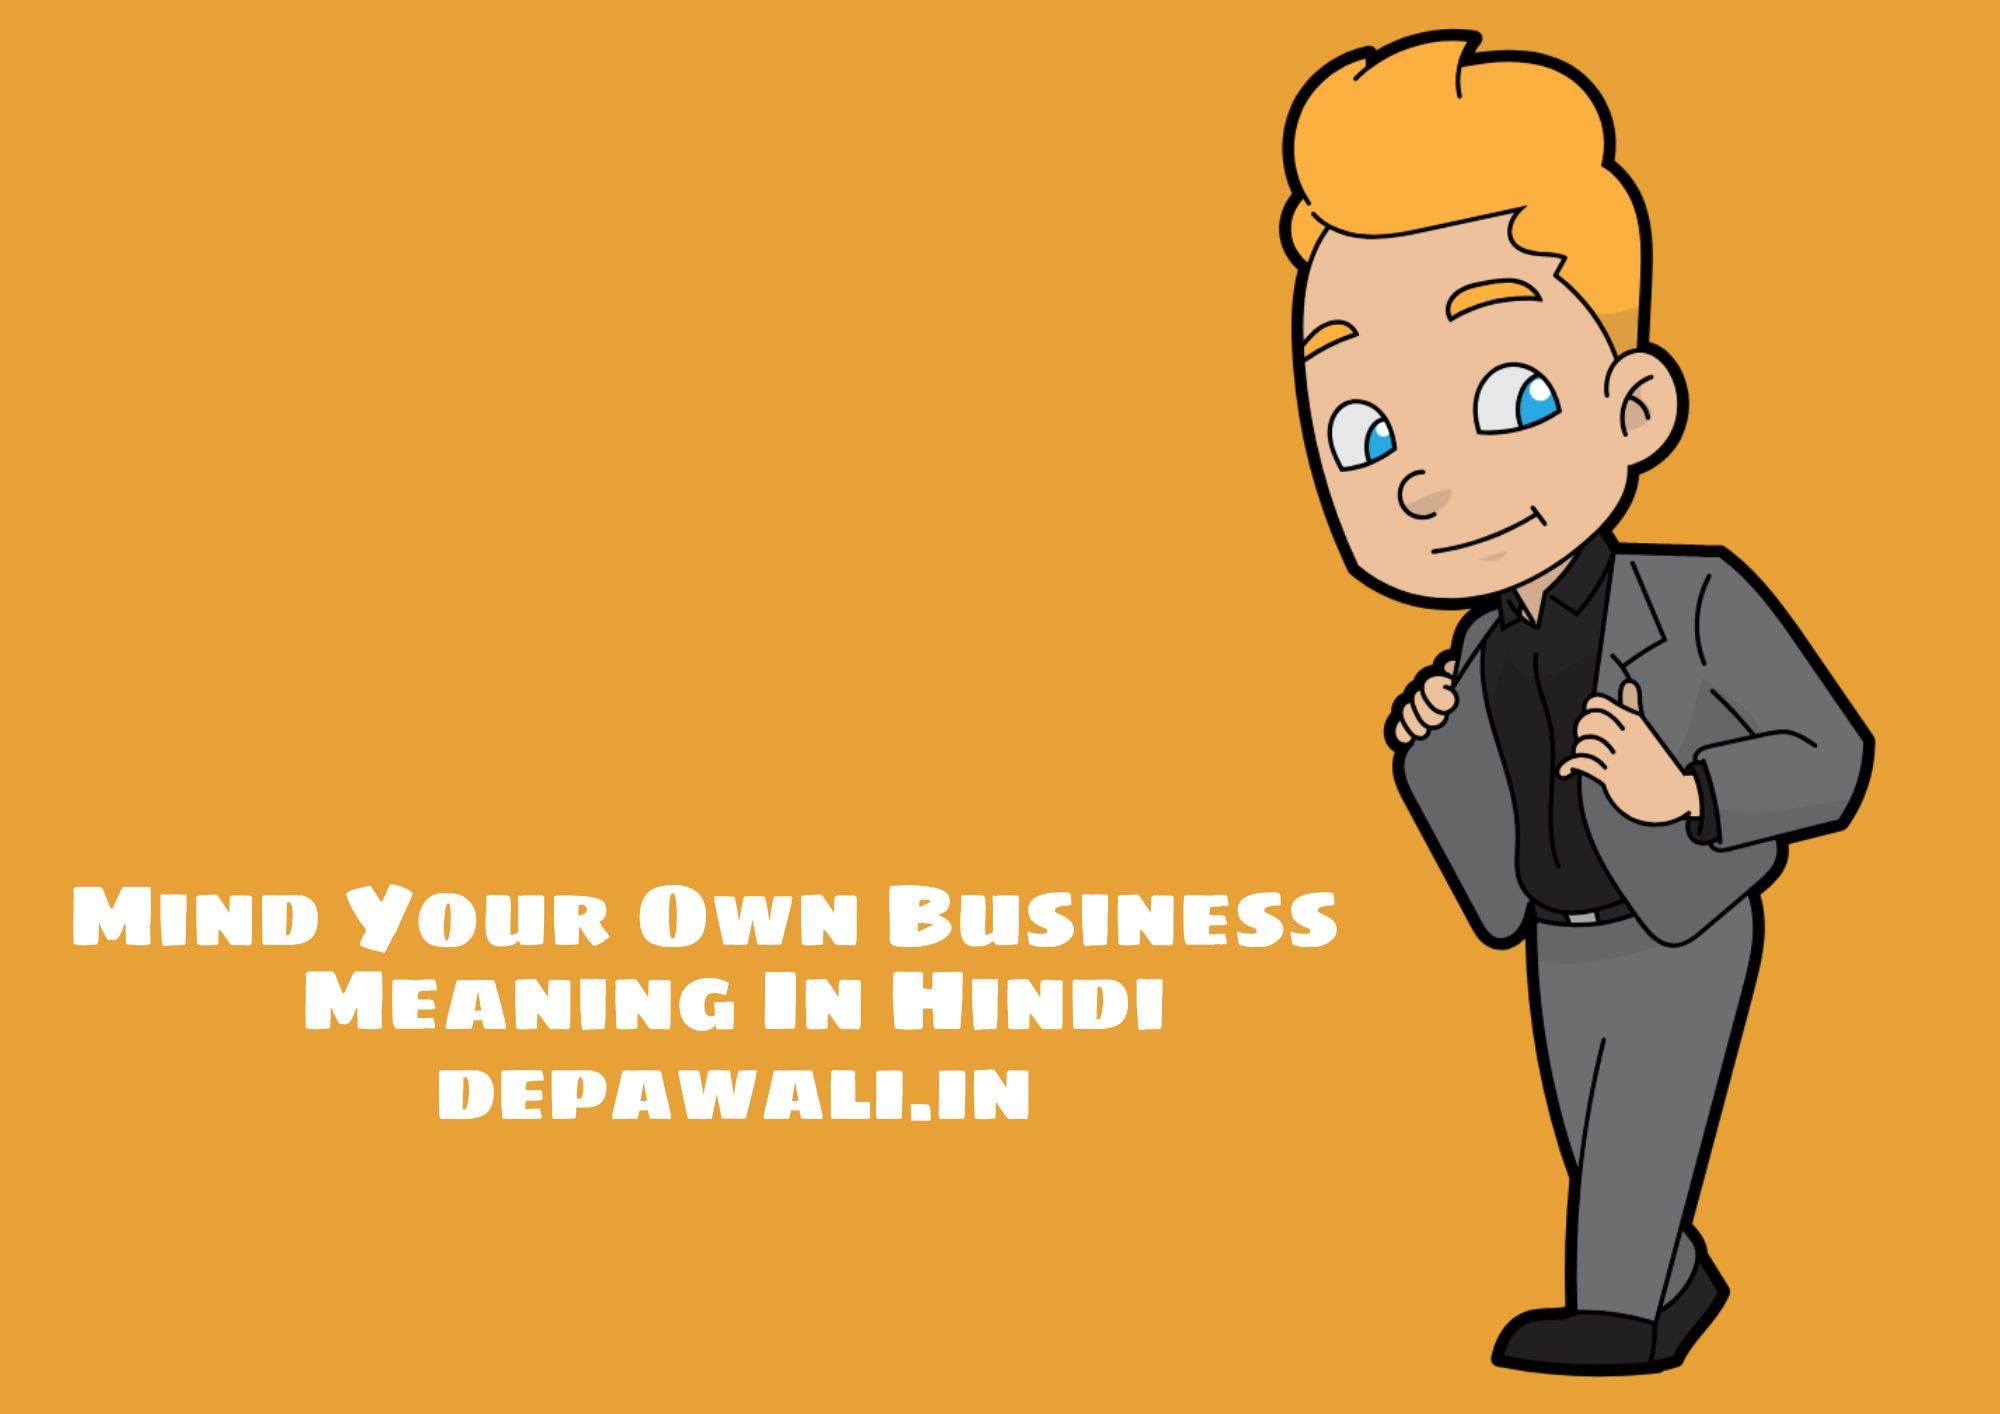 Mind Your Own Business Meaning In Hindi - माइंड योर ओन बिजनेस का मतलब क्या होता है?